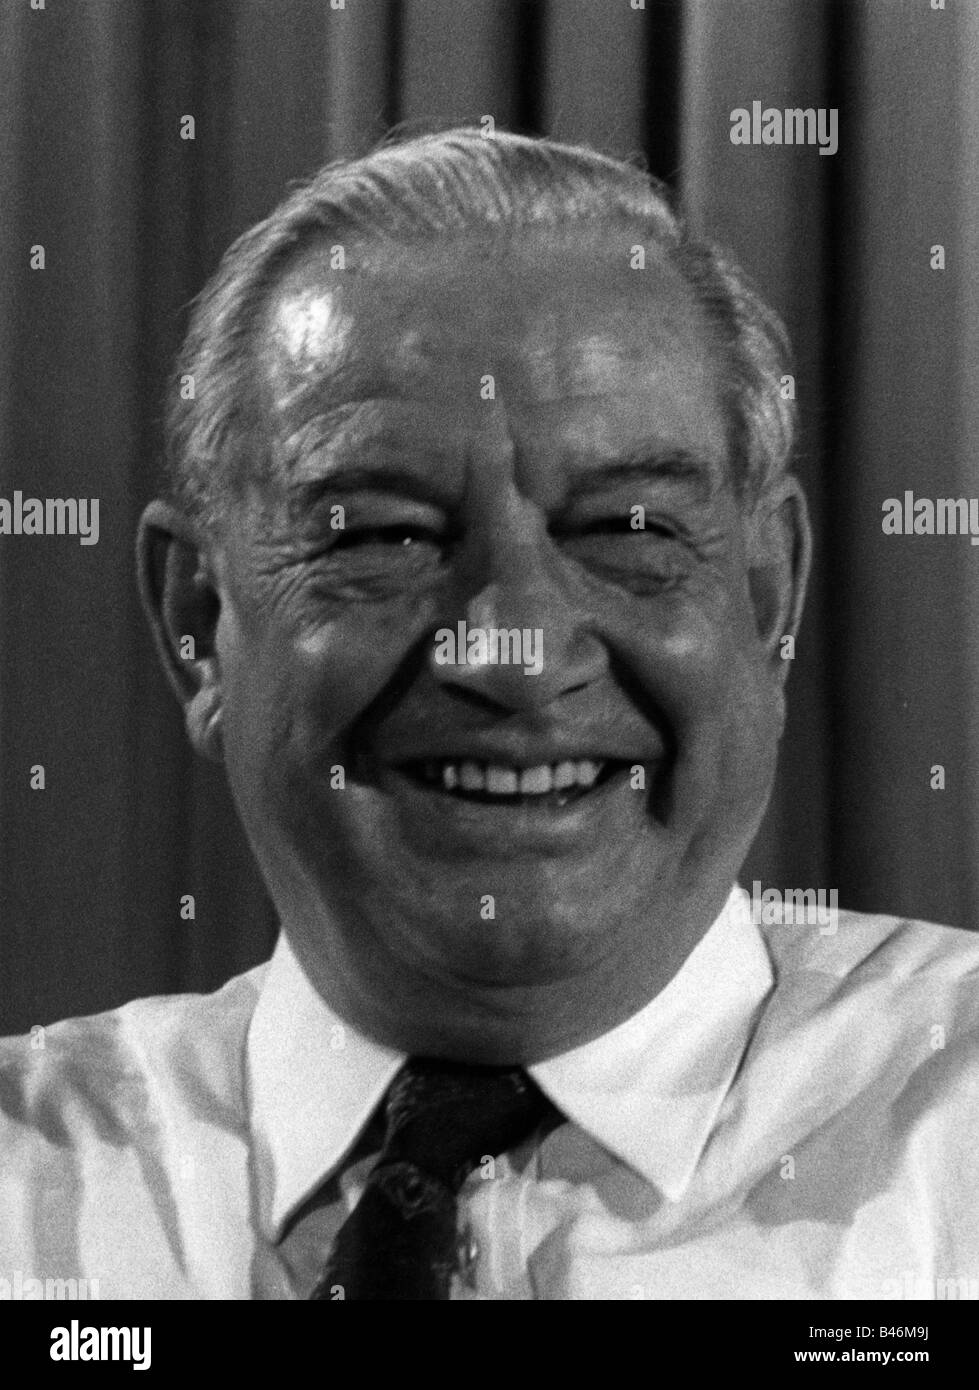 Goppel, Alfons, 1.10.1905 - 24 12.1991, politico tedesco (CSU), primo ministro della Baviera 11.12.1962 - 7.11.1978, Portrait, 1976, Foto Stock